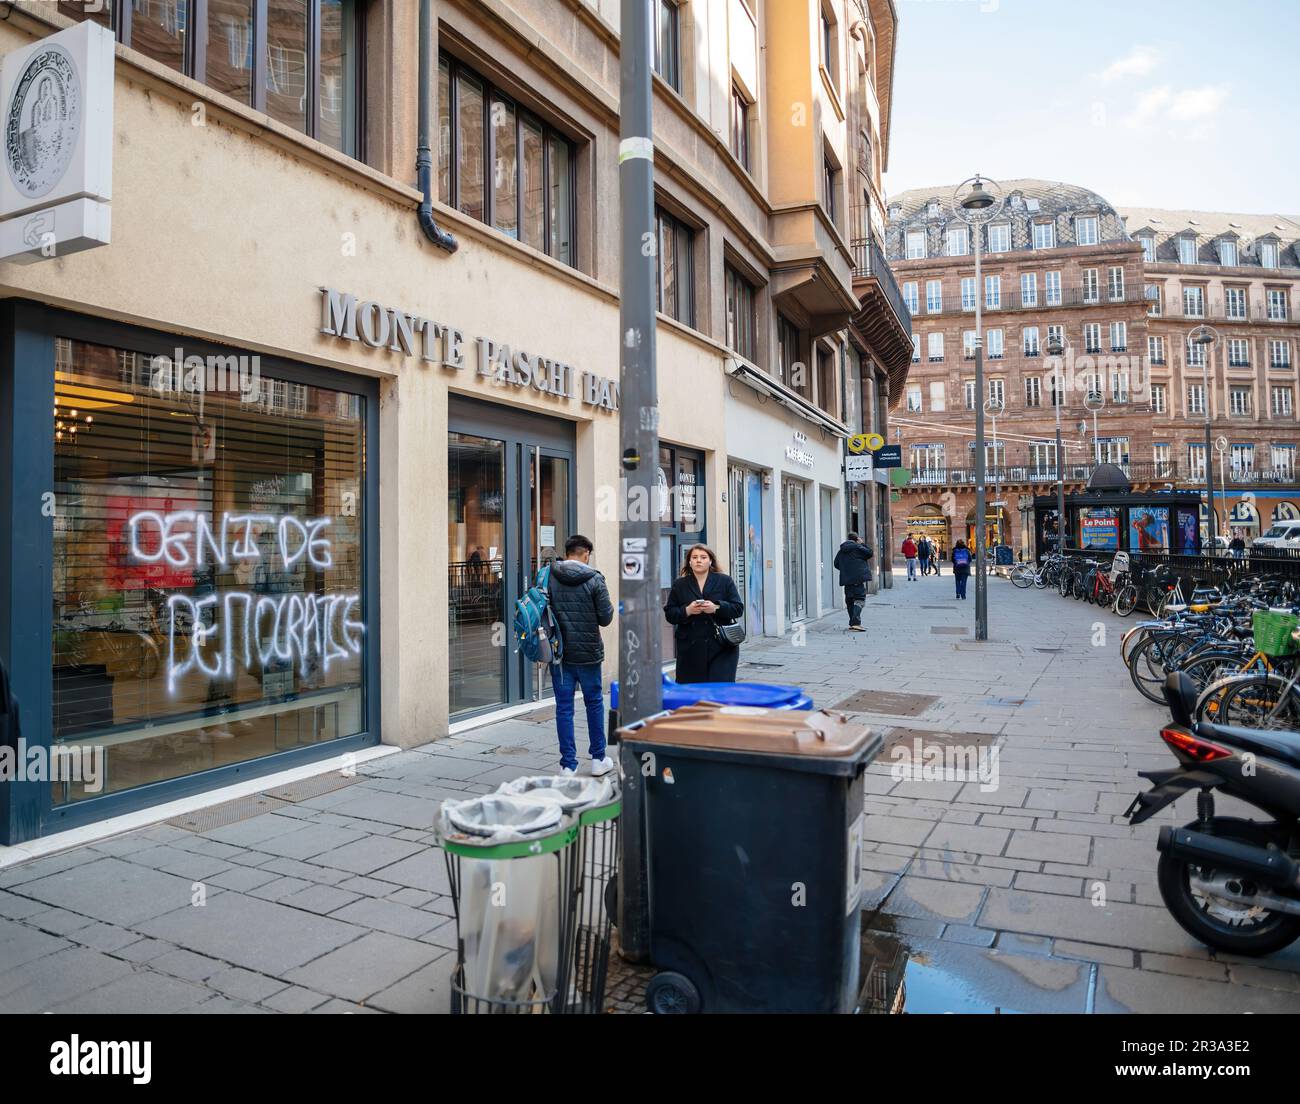 Strasbourg, France - 20 mars 2023 : façade de la Banque Monte Paschi  endommagée après une manifestation contre la réforme des retraites du  gouvernement en France se produit dans une rue de